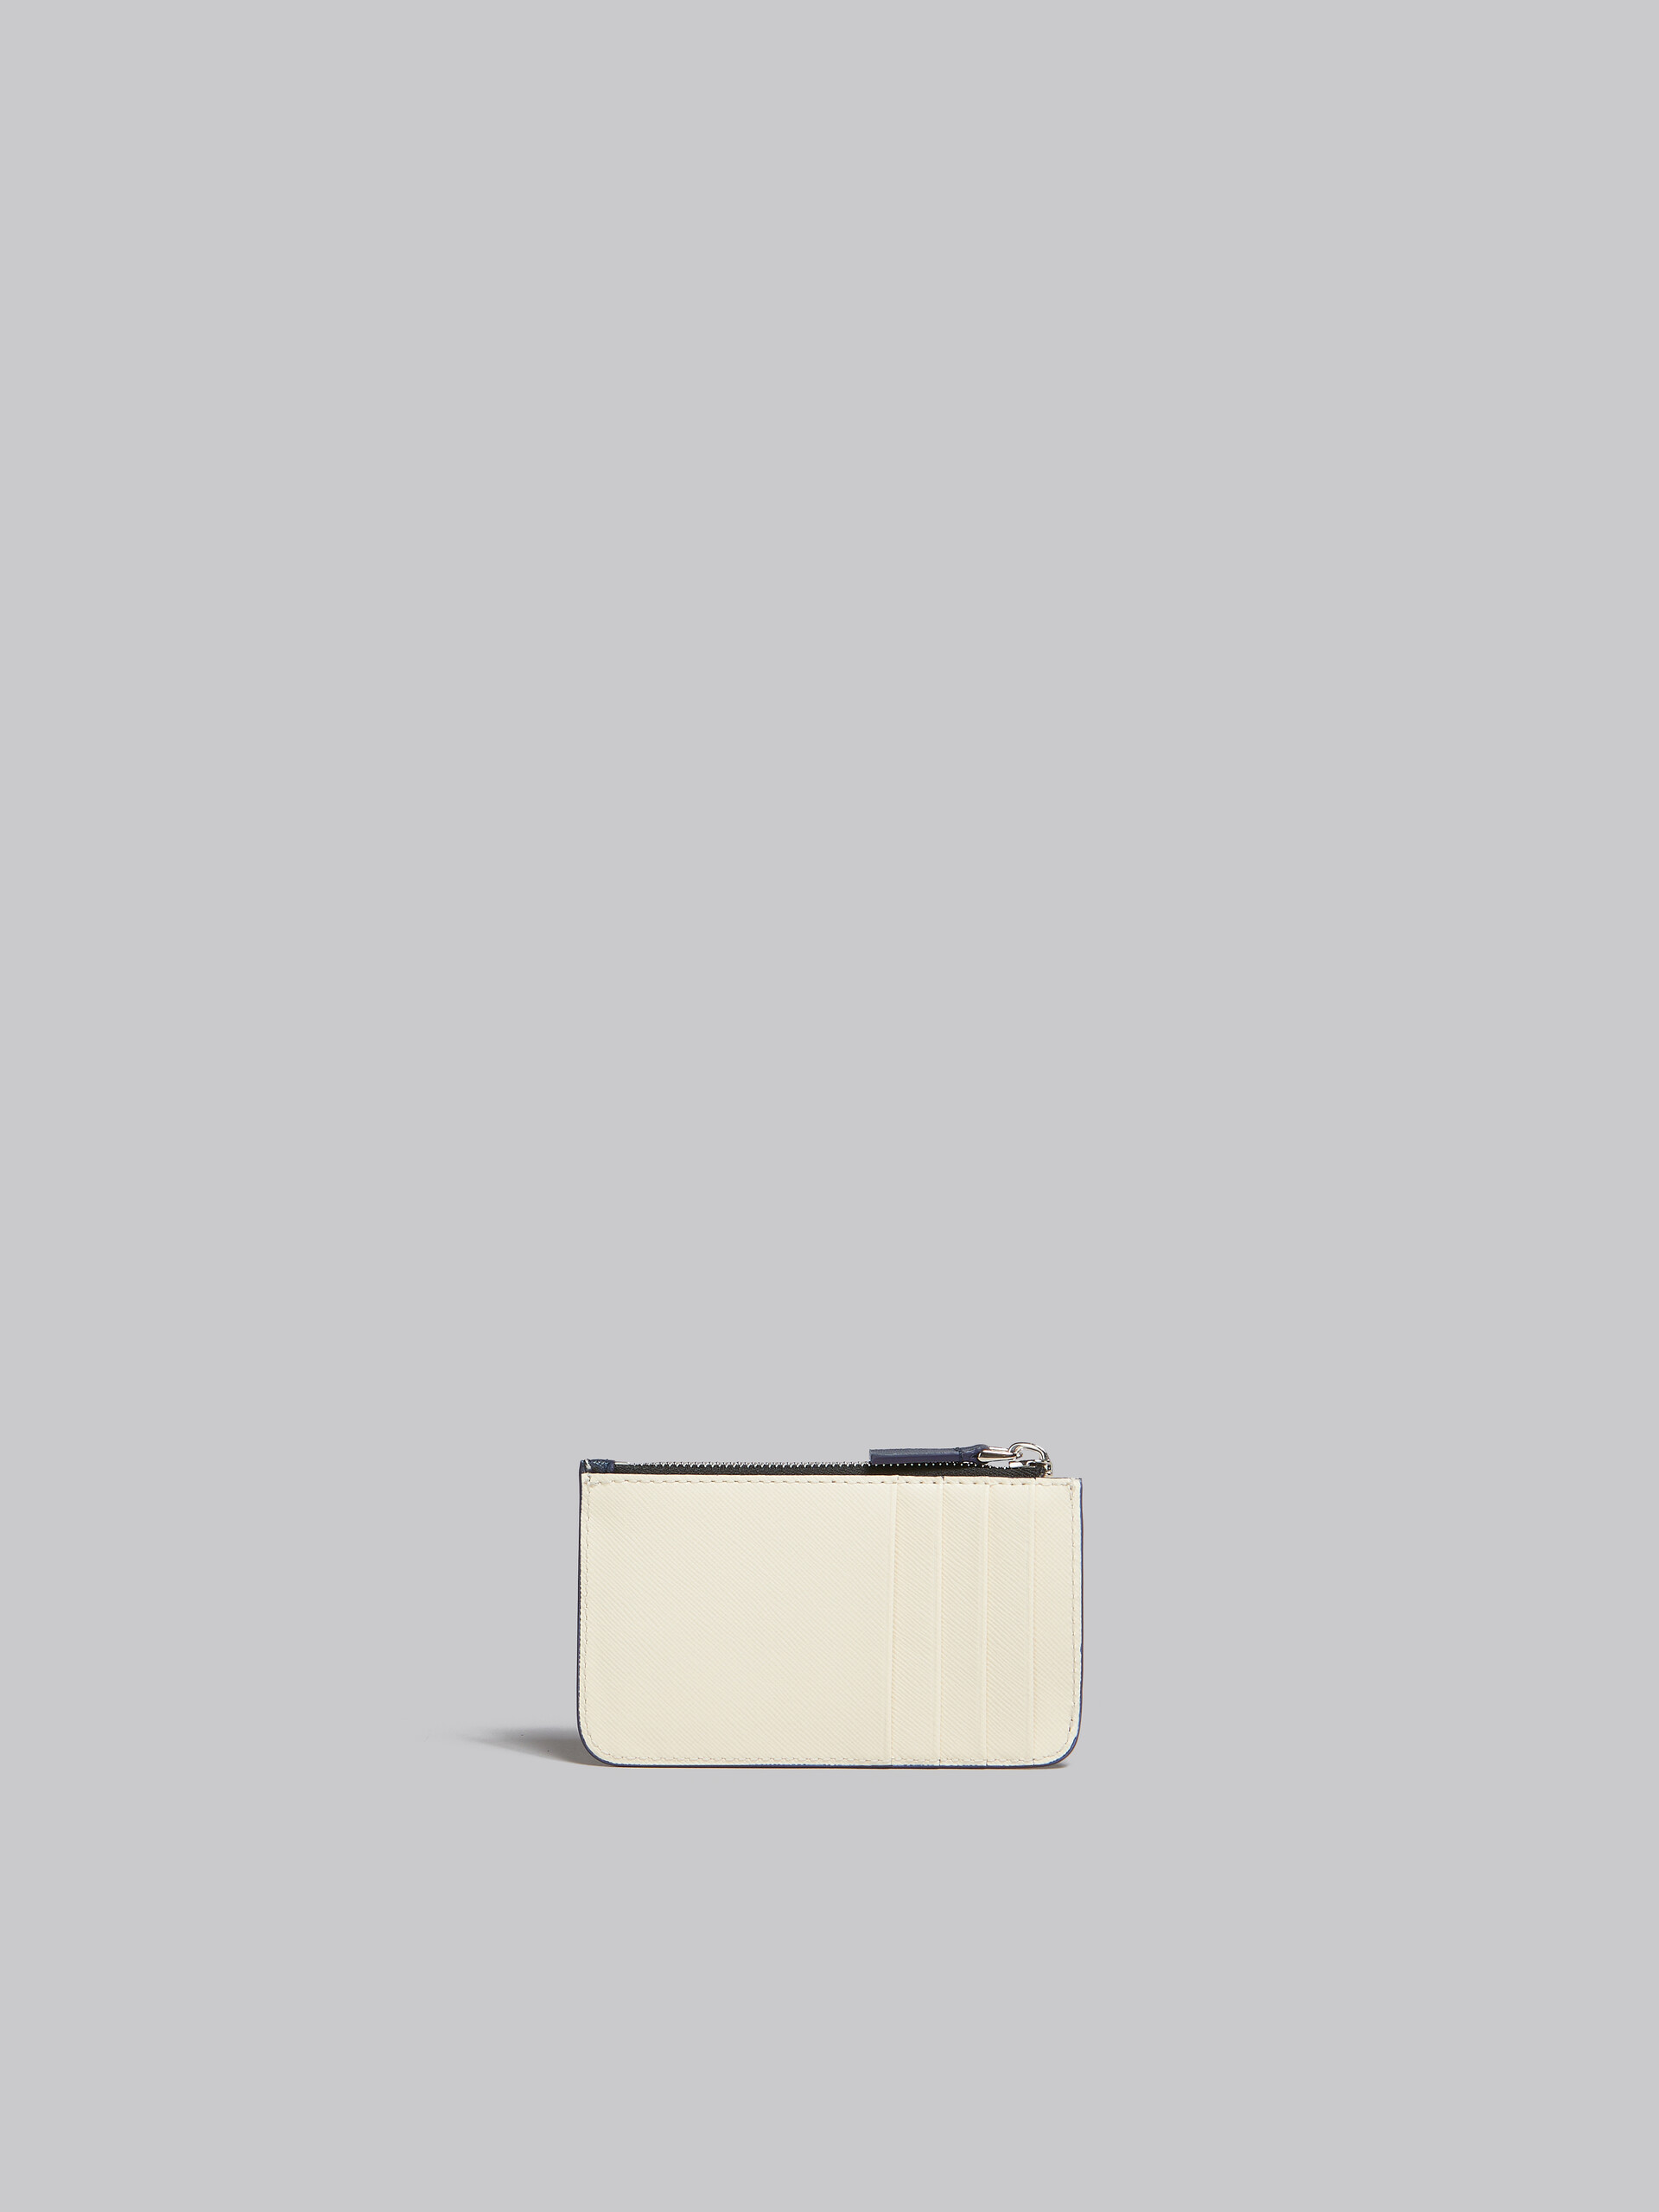 クリーム ディープブルー サフィアーノレザー製 カードホルダー、ファスナー式ポケット - 財布 - Image 3